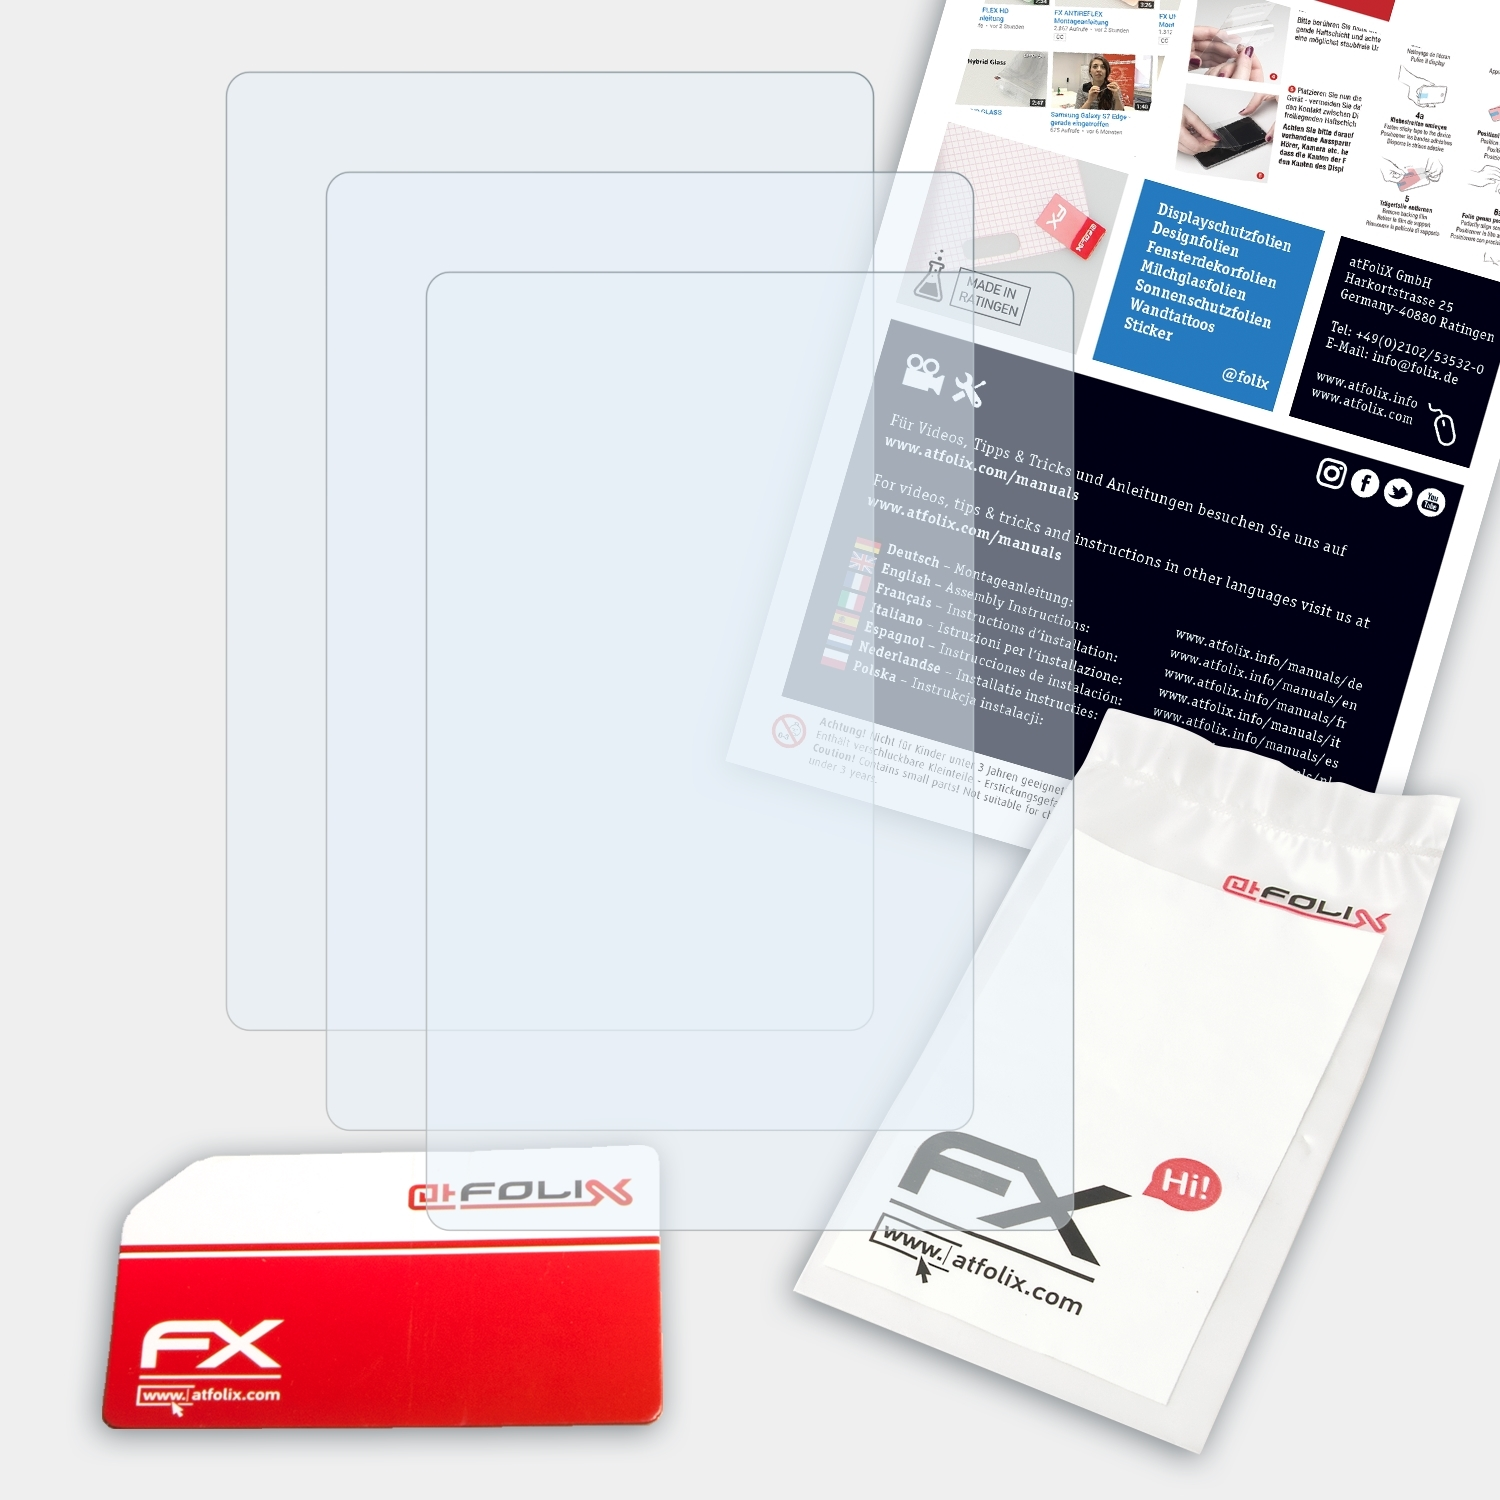 ATFOLIX 3x FX-Clear Kiox) Displayschutz(für Bosch